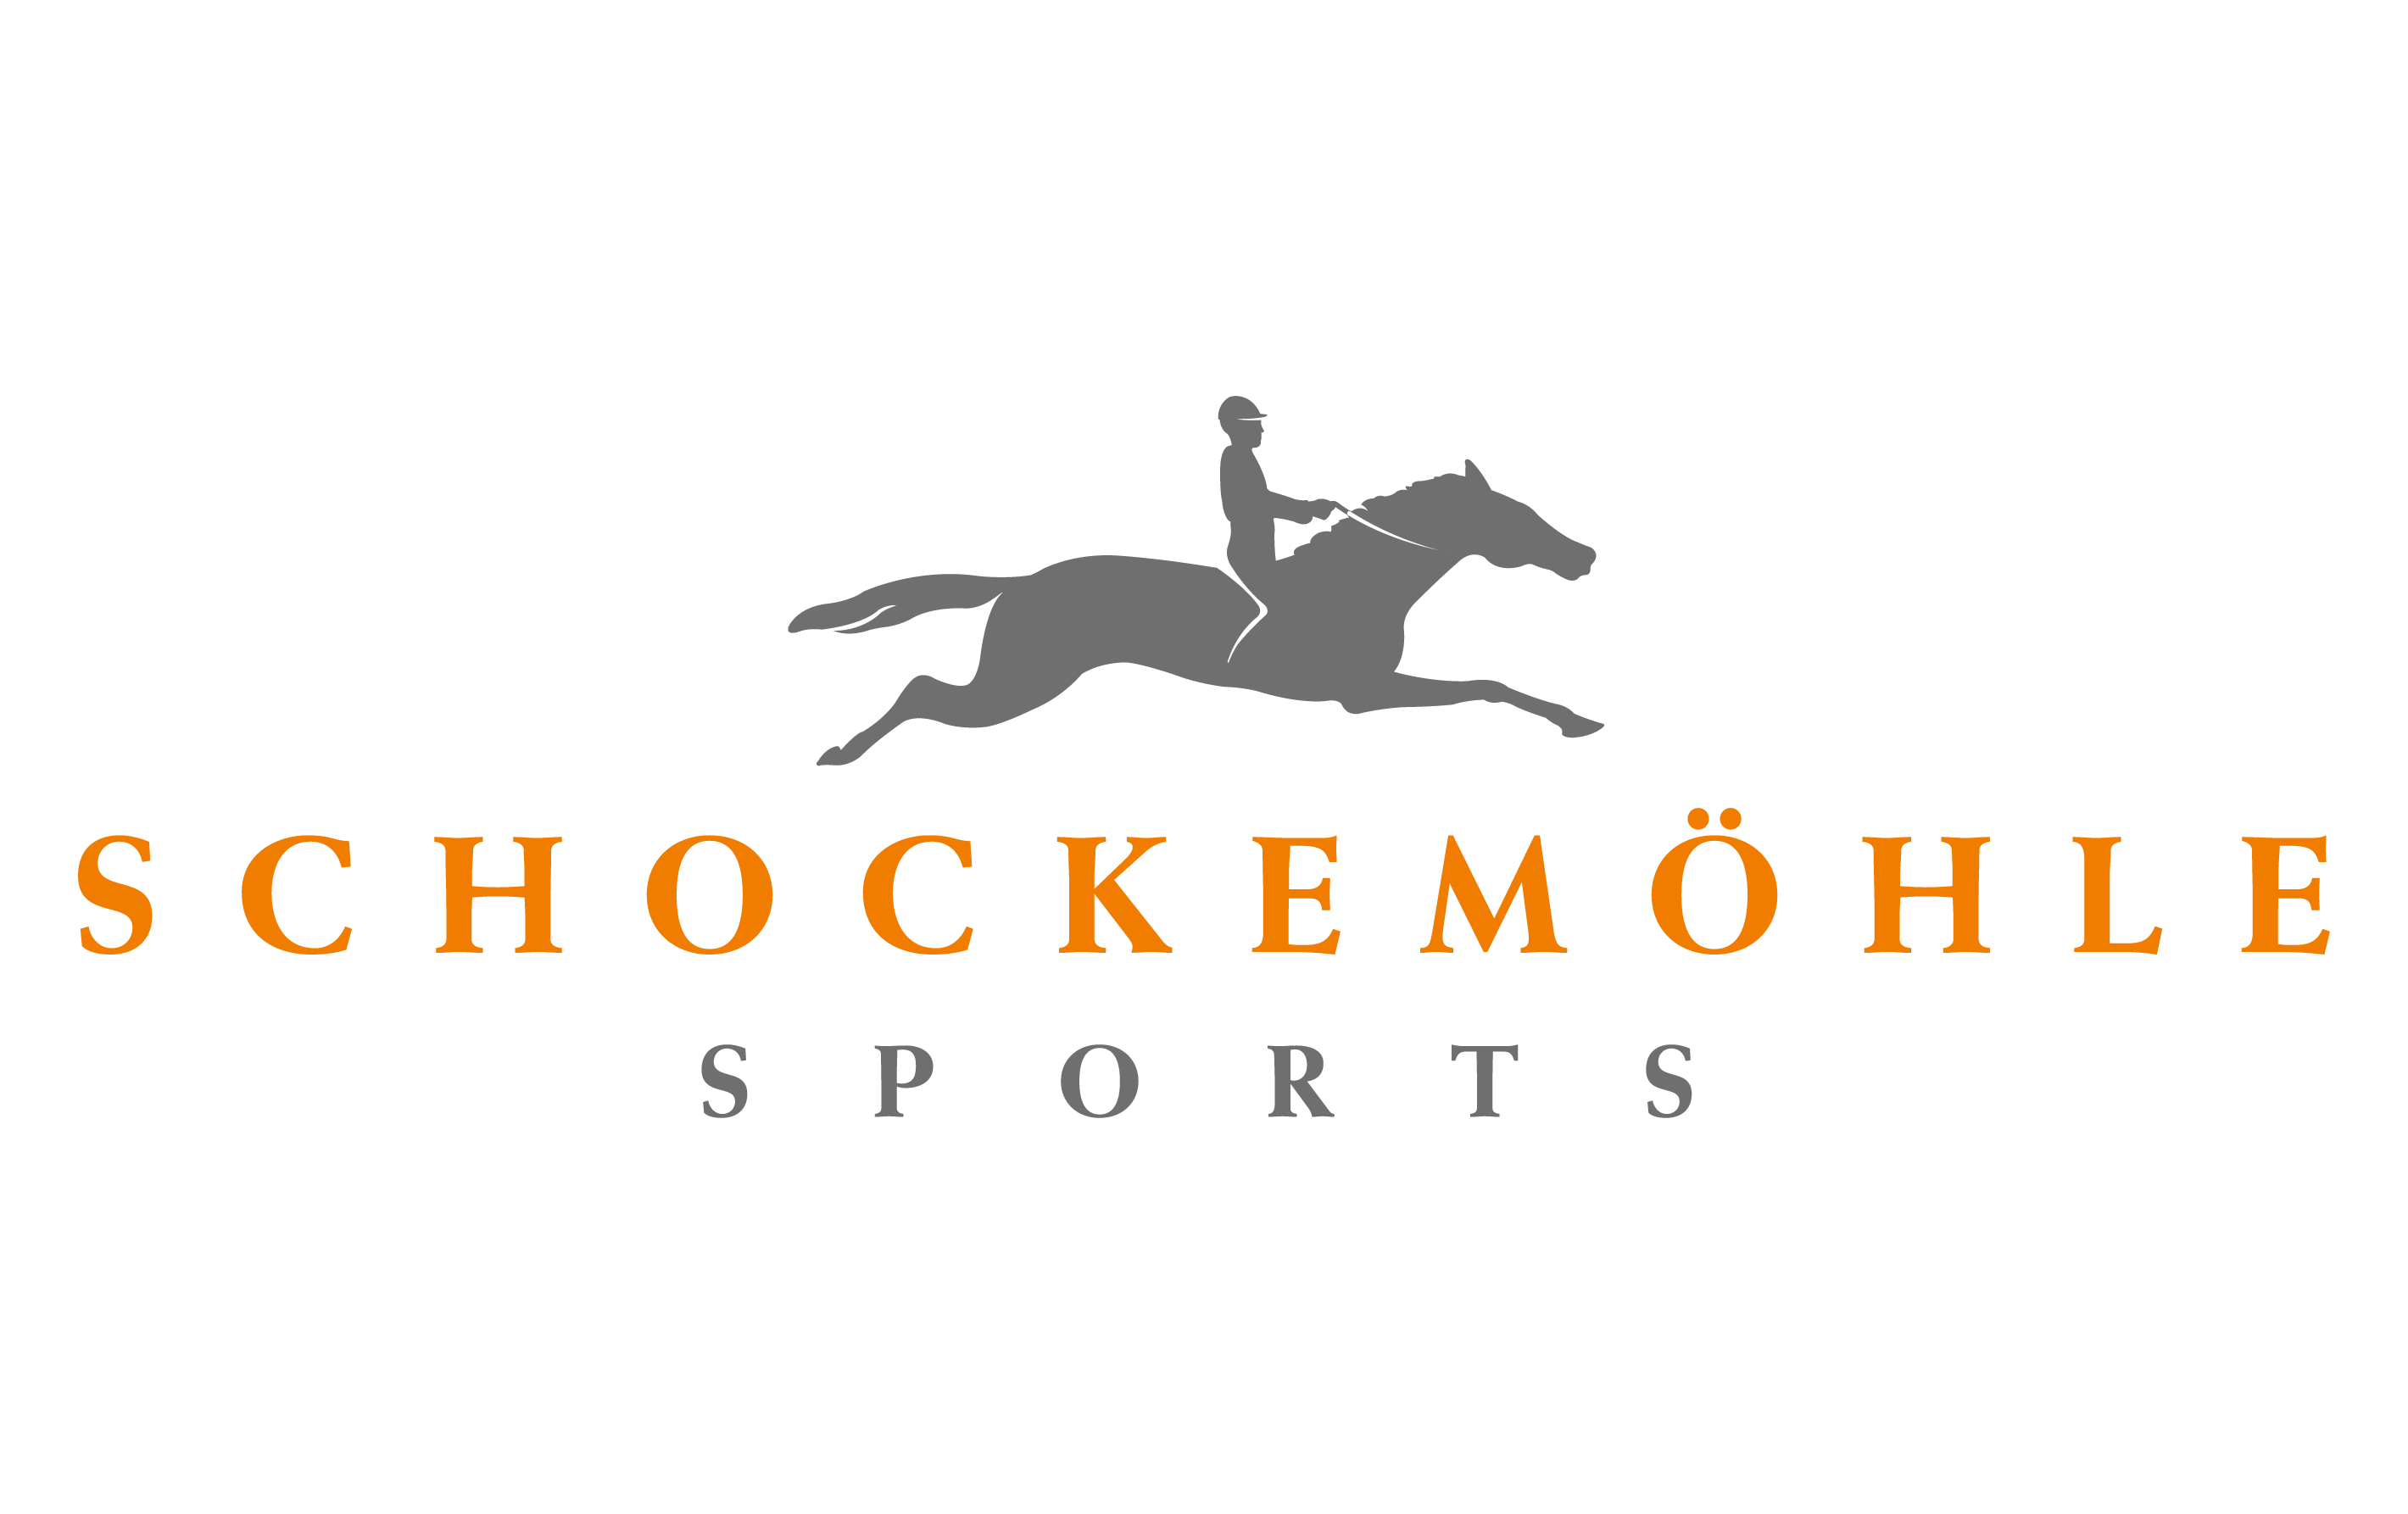 Schockemöhle Sport - Equibrands Club